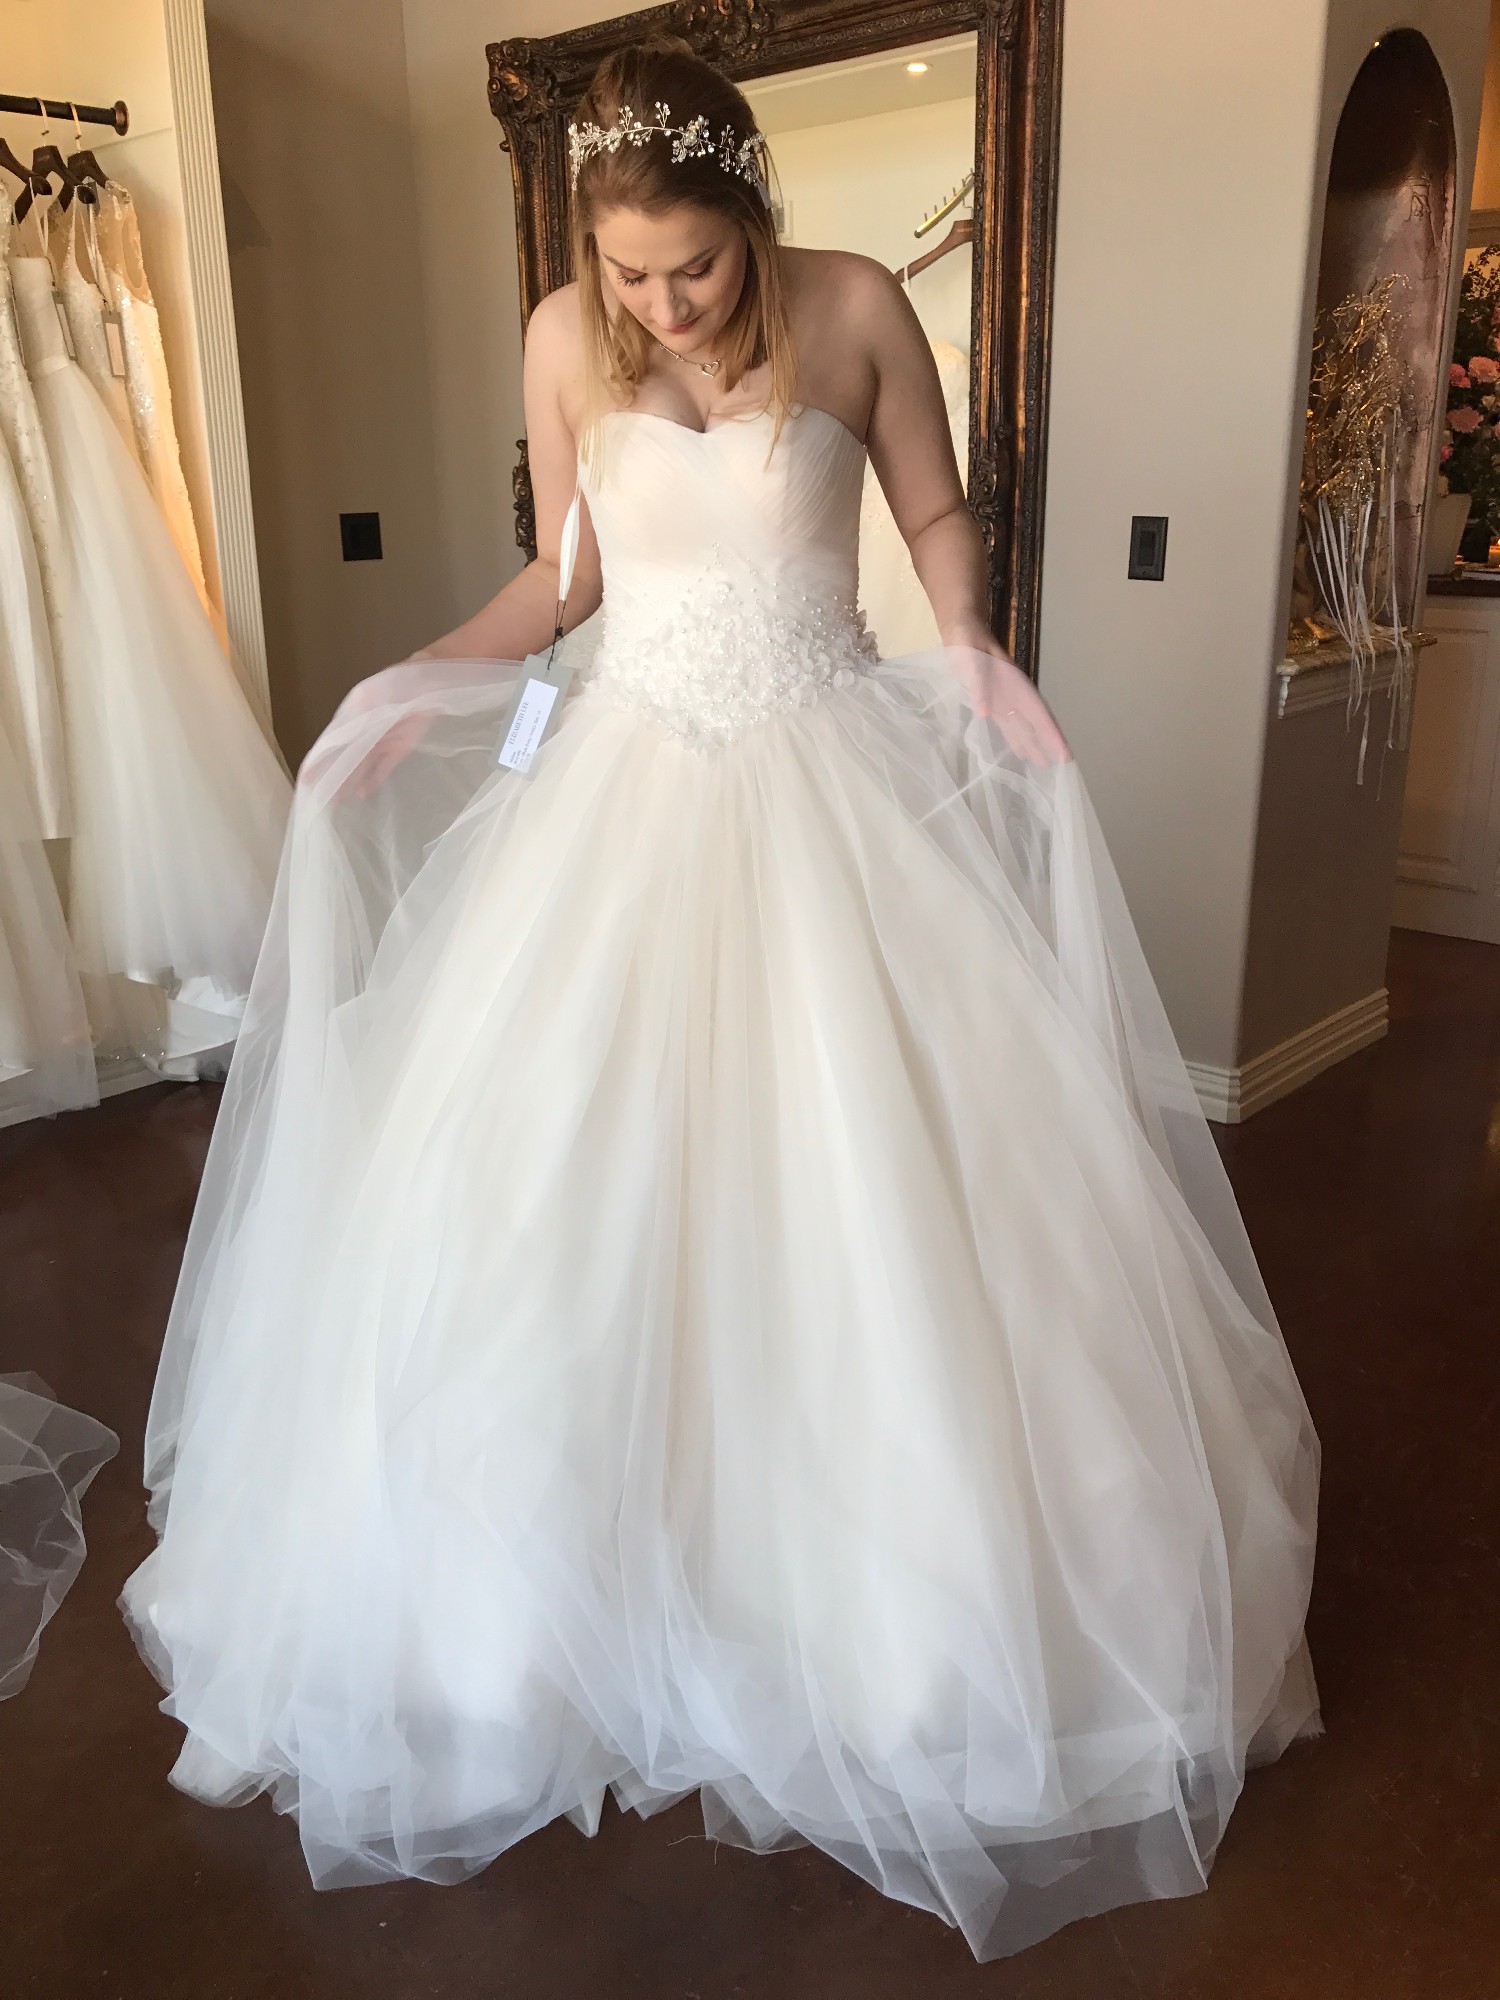 Elizabeth Lee Melissa Second Hand Wedding Dress Save 77% - Stillwhite